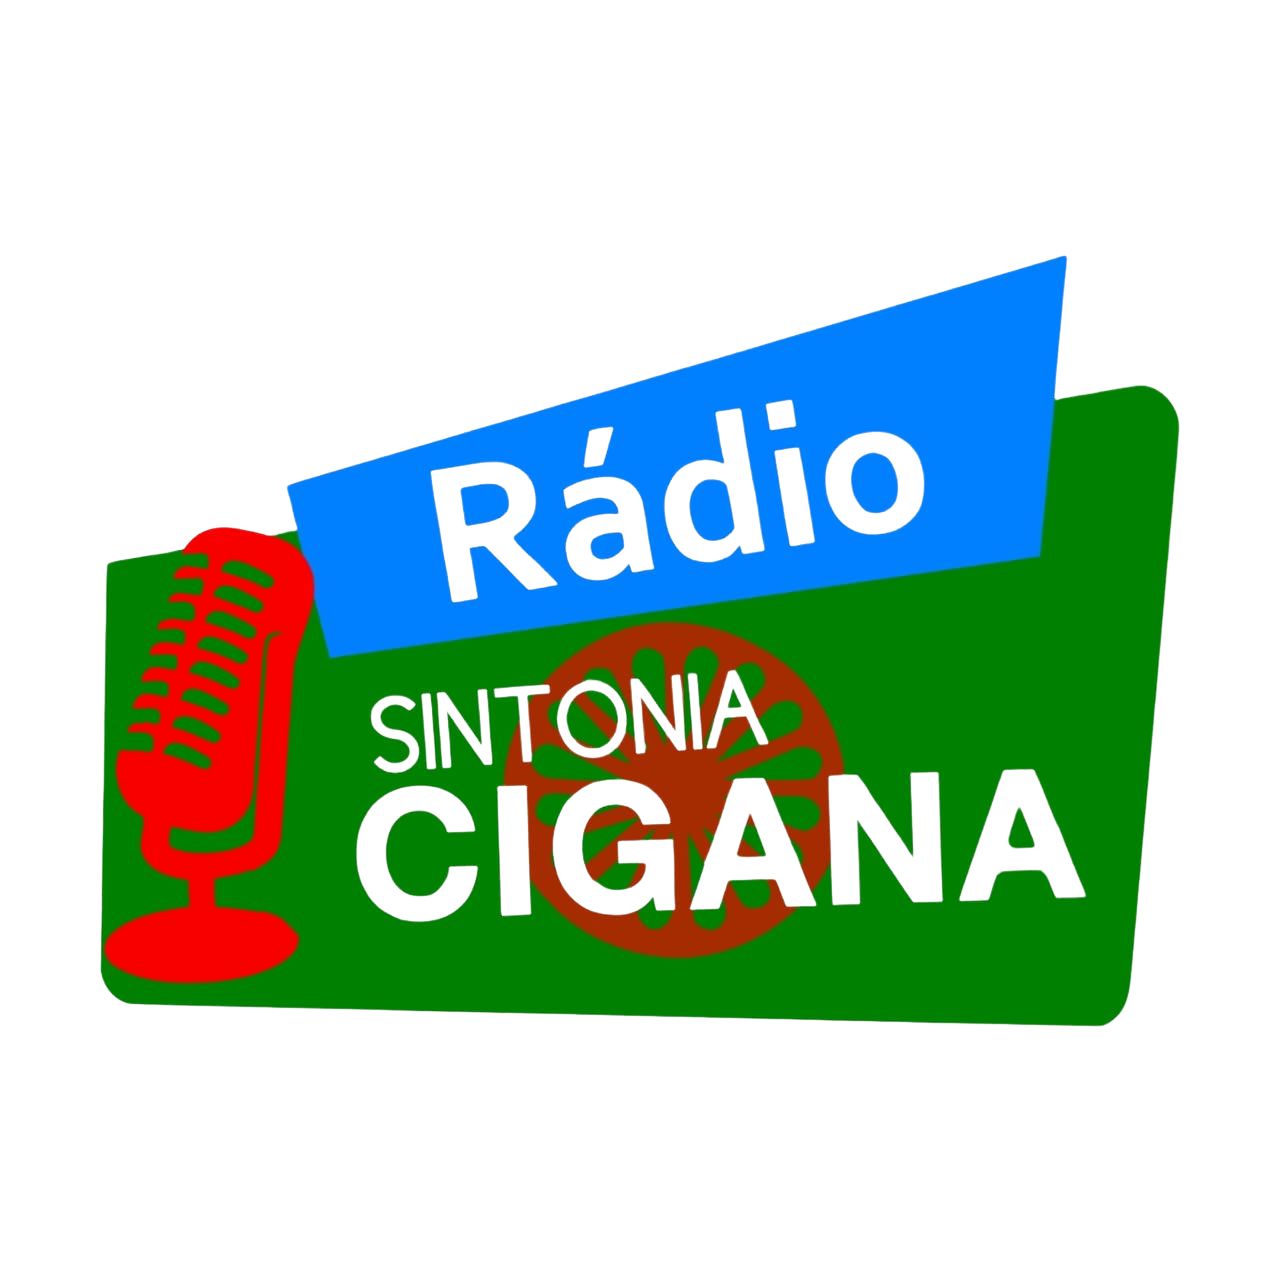 Rádio Sintonia Cigana